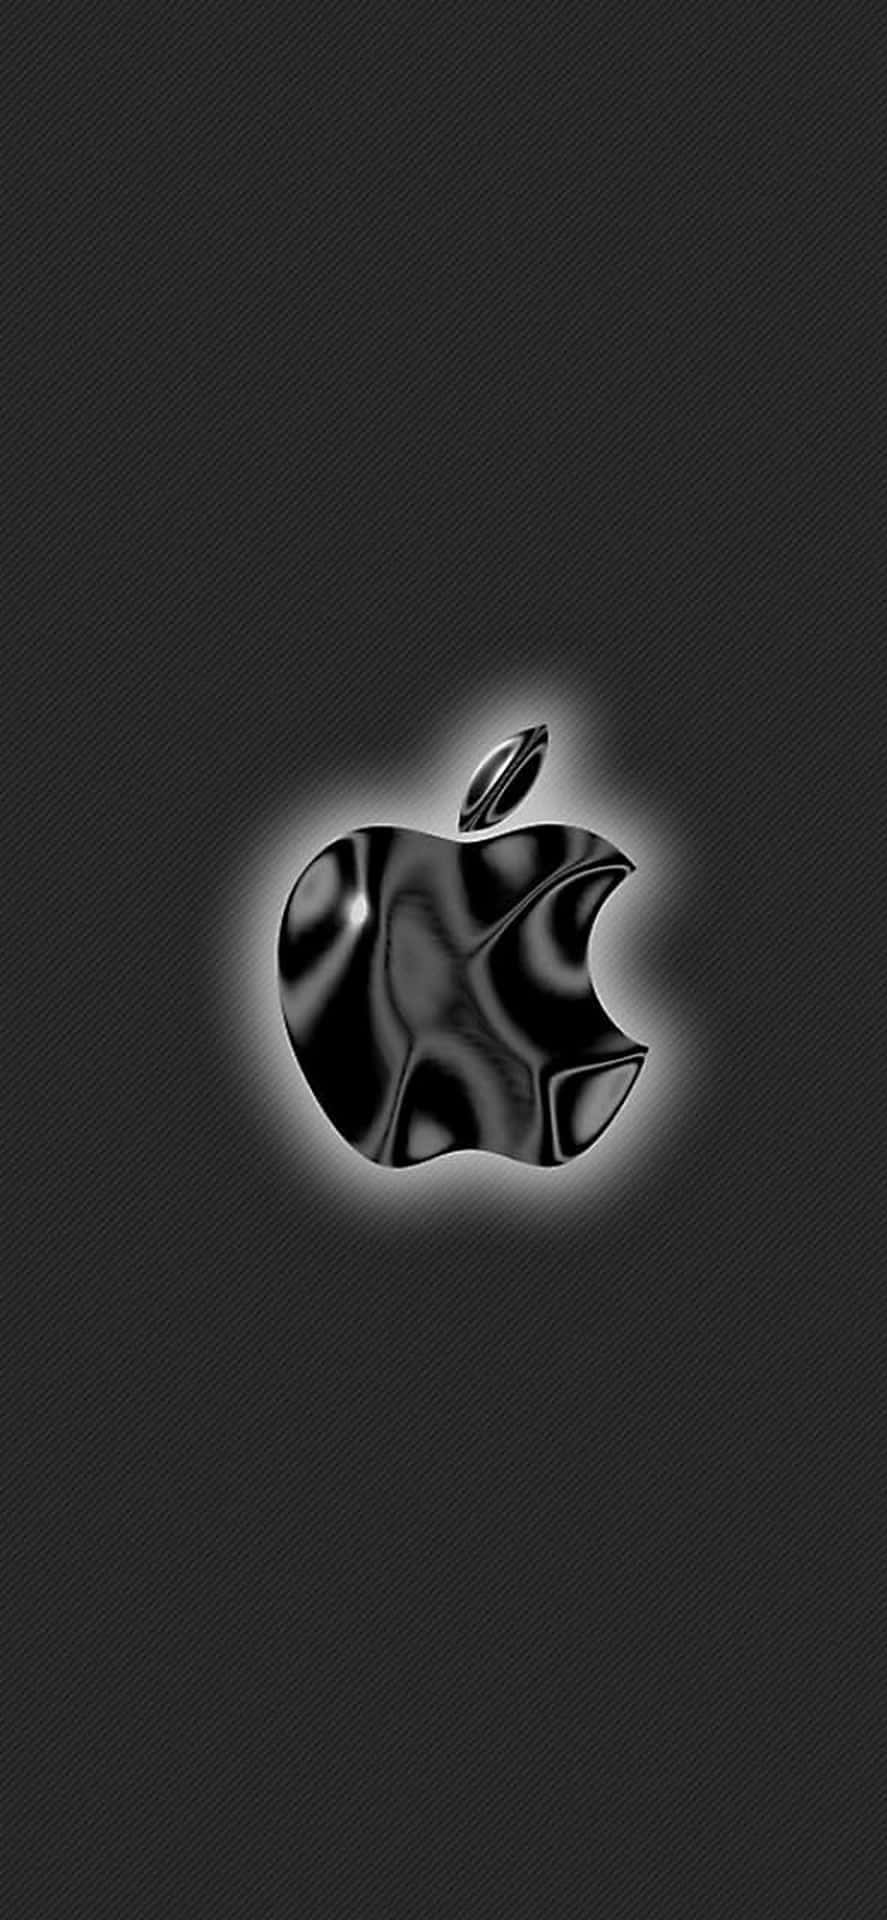 Logotiponegro Brillante Increíble De Apple Hd Para Iphone Fondo de pantalla